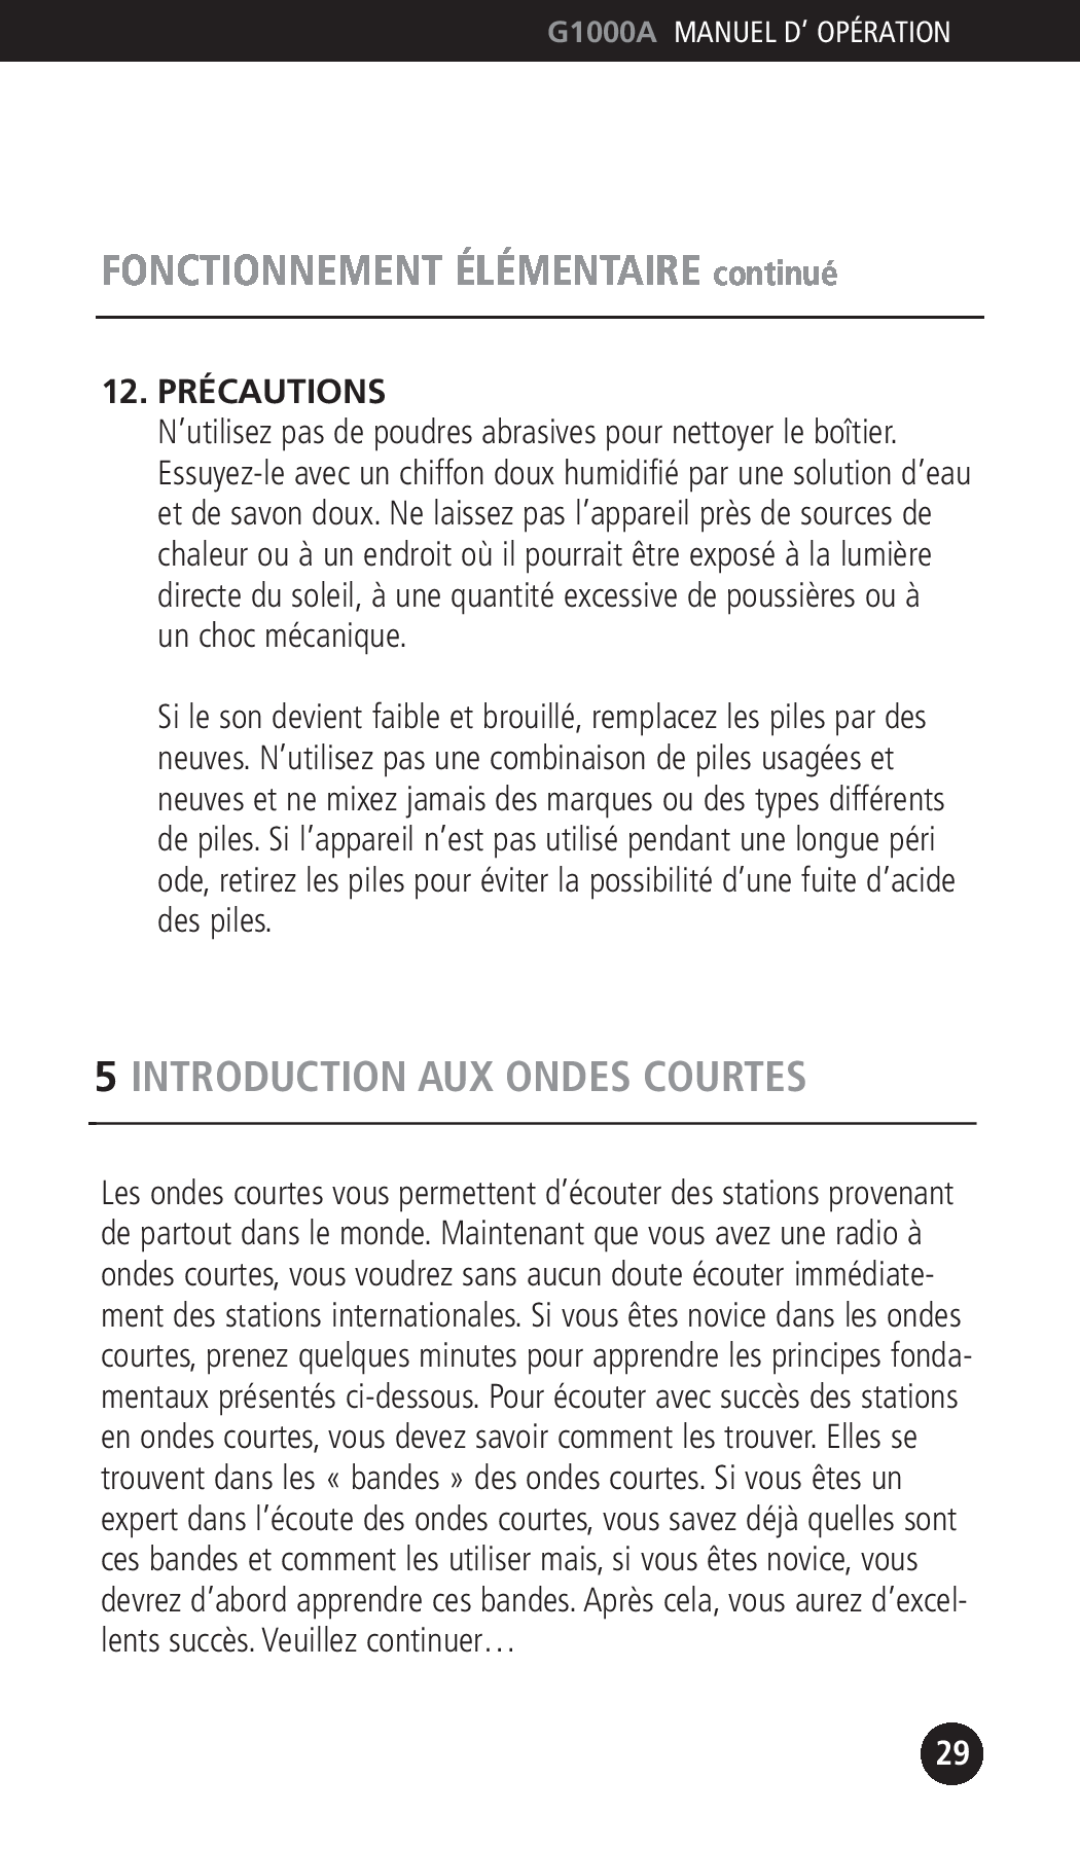 Eton G1000A operation manual Introduction Aux Ondes Courtes, 12.PRÉCAUTIONS, FONCTIONNEMENT ÉLÉMENTAIRE continué 